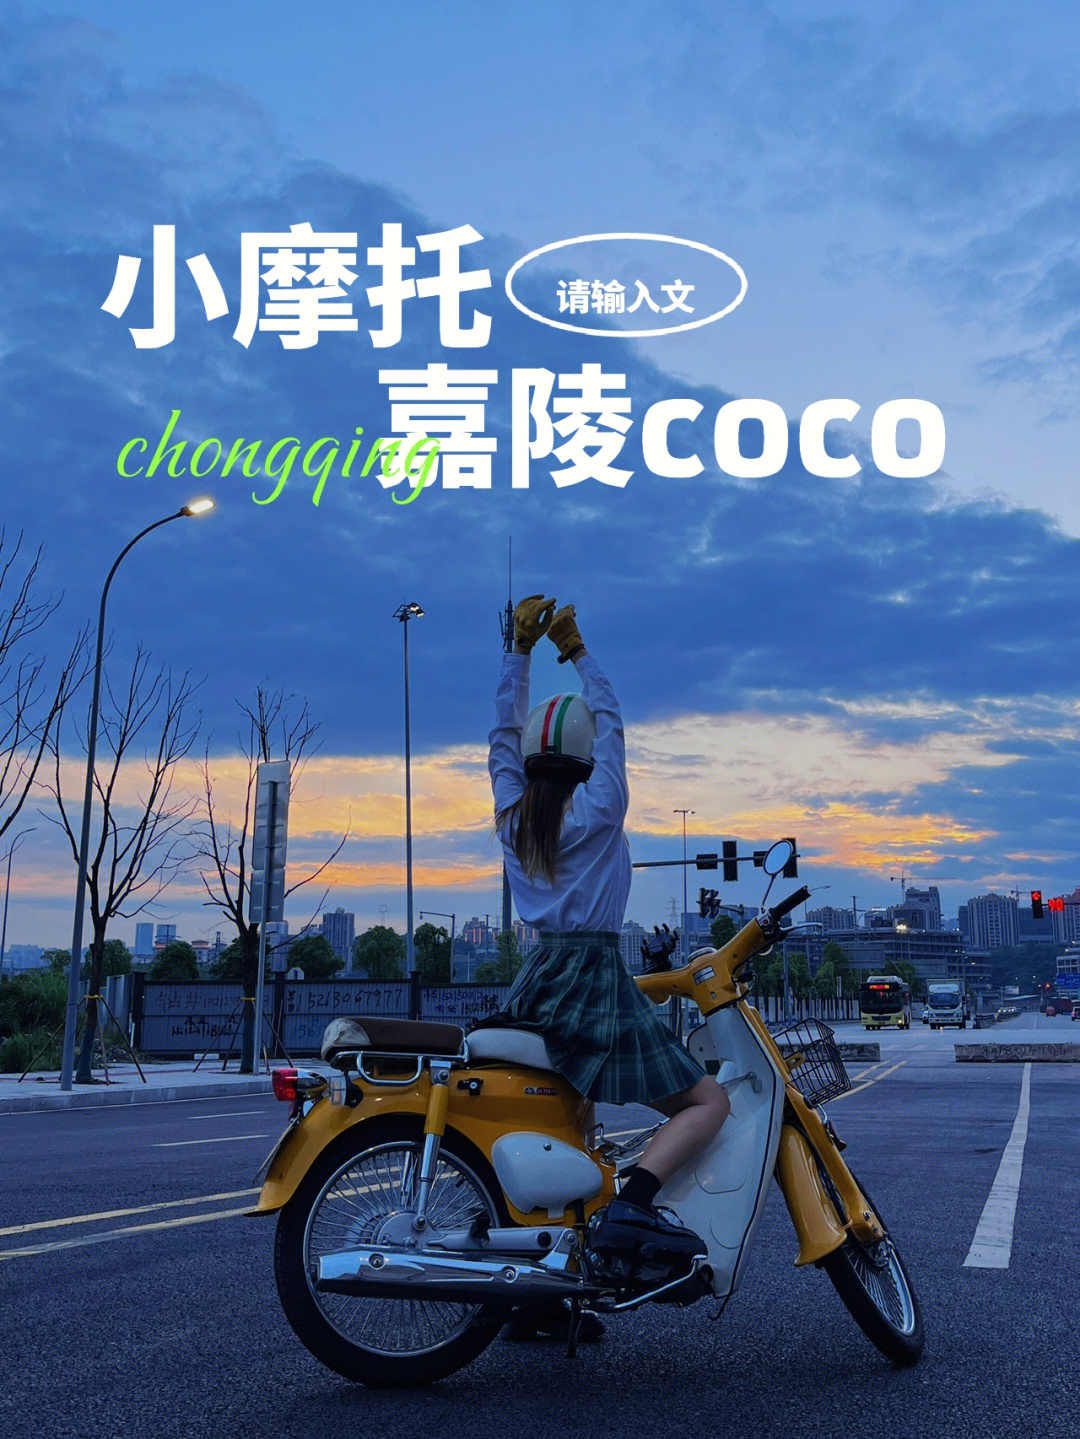 嘉陵coco这个夏天在重庆嘉陵江边一起吹风